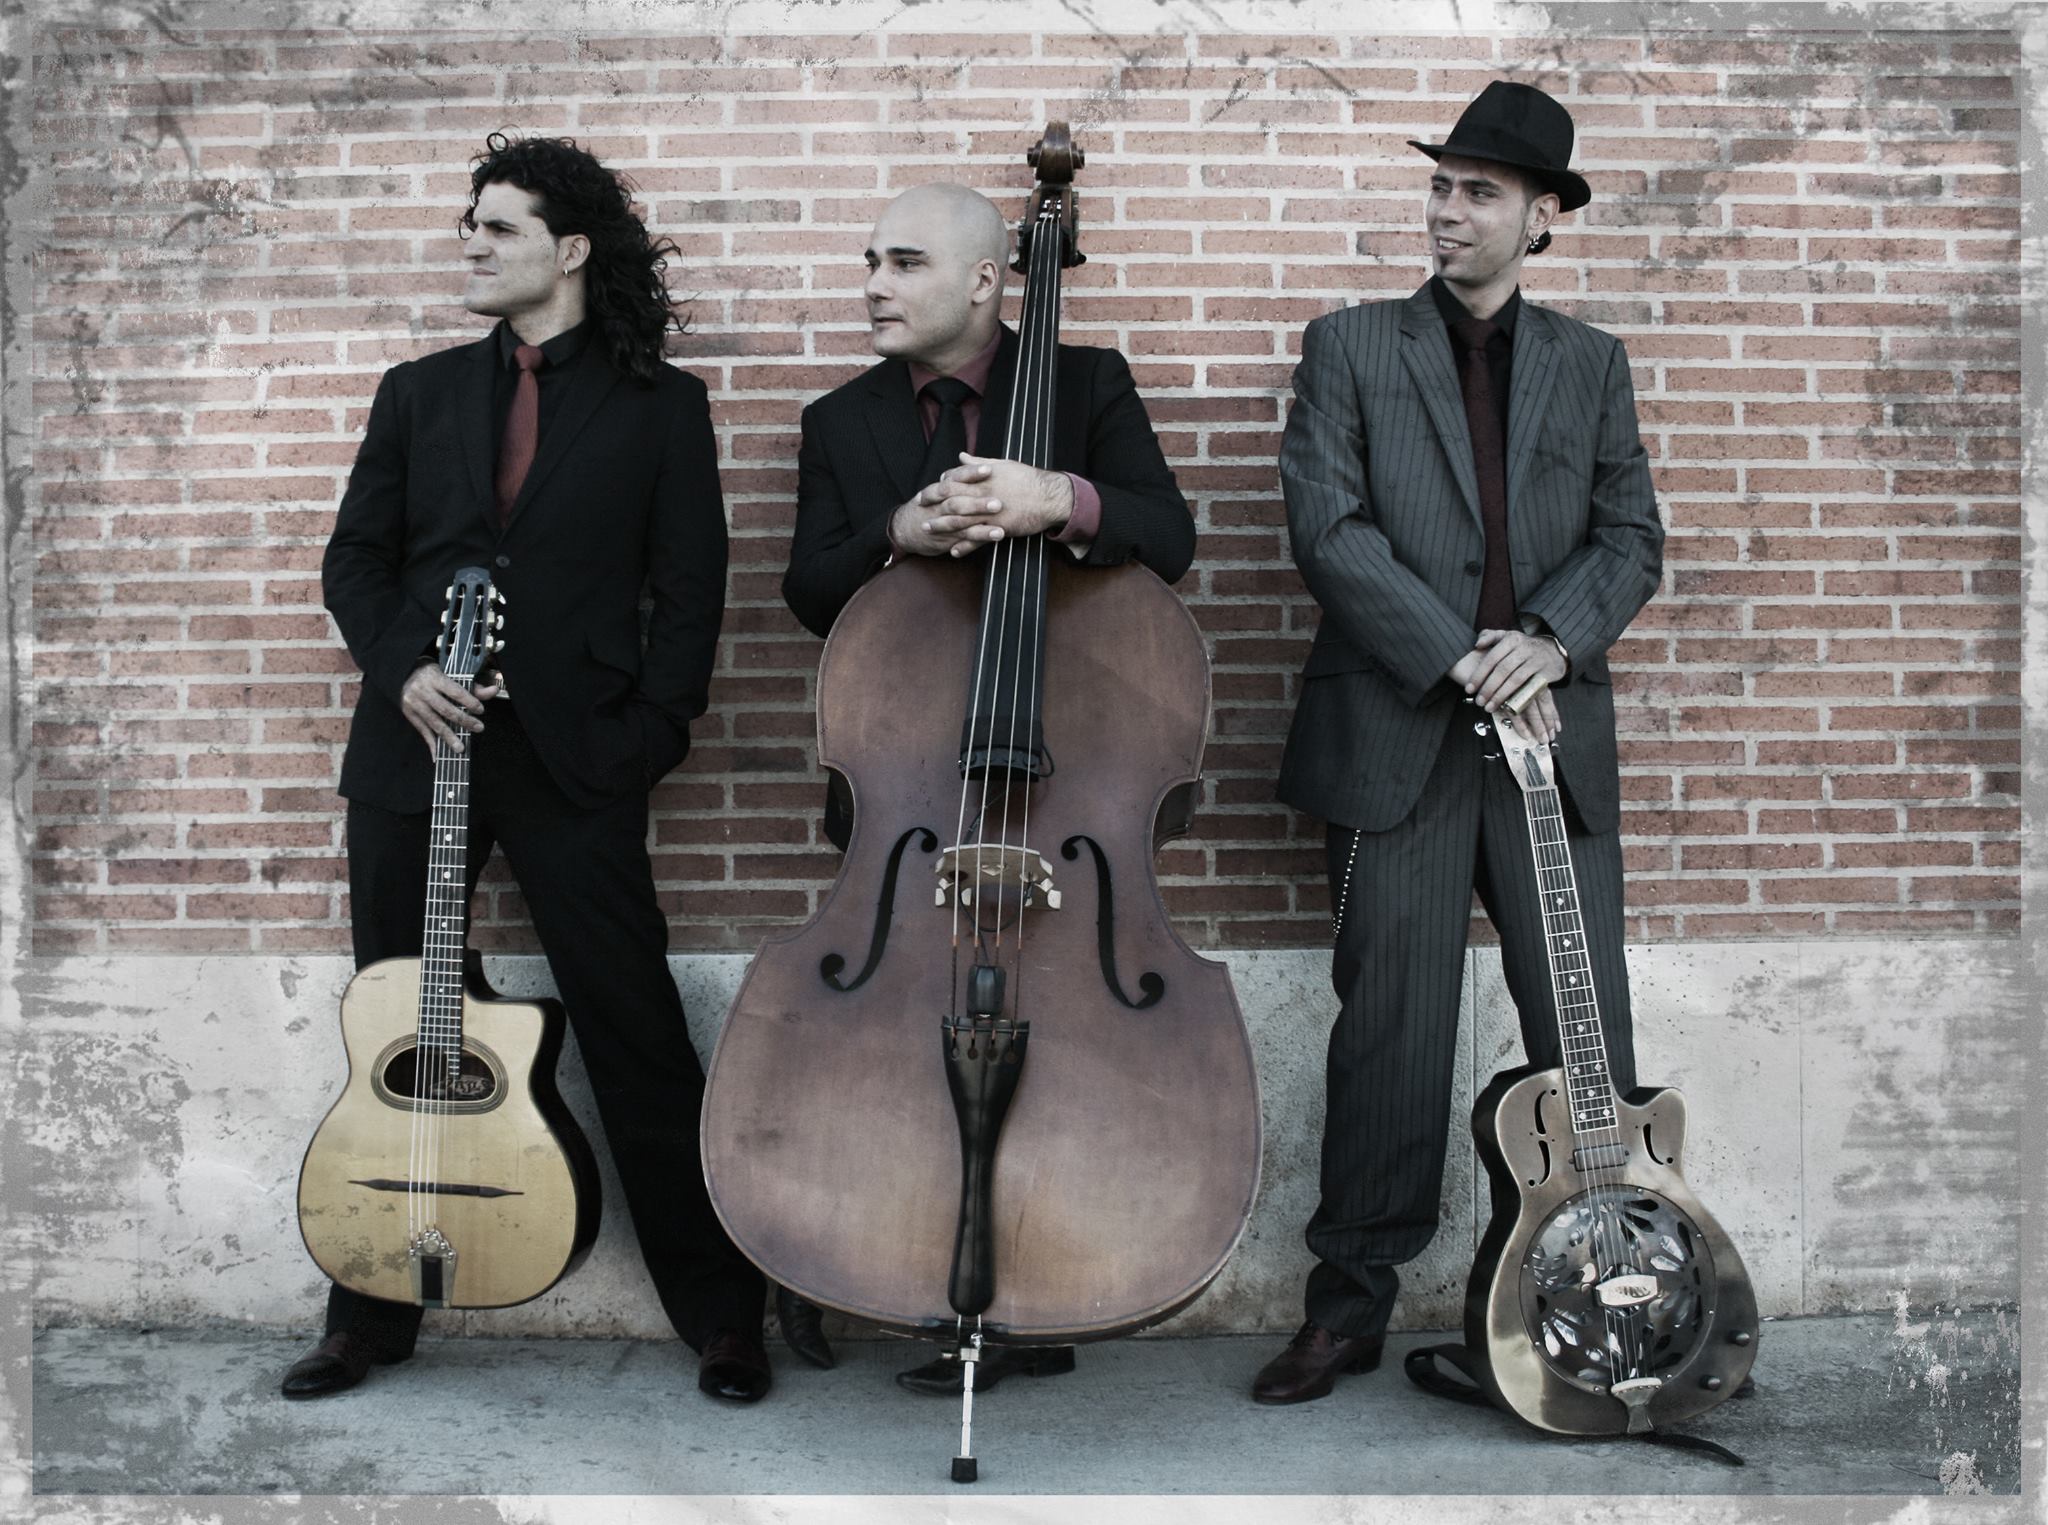 From the left: Albert Bello (guitar, ukulele), Rod Deville (double bass) and Hernan Senra (dobro, guitar, ukulele)